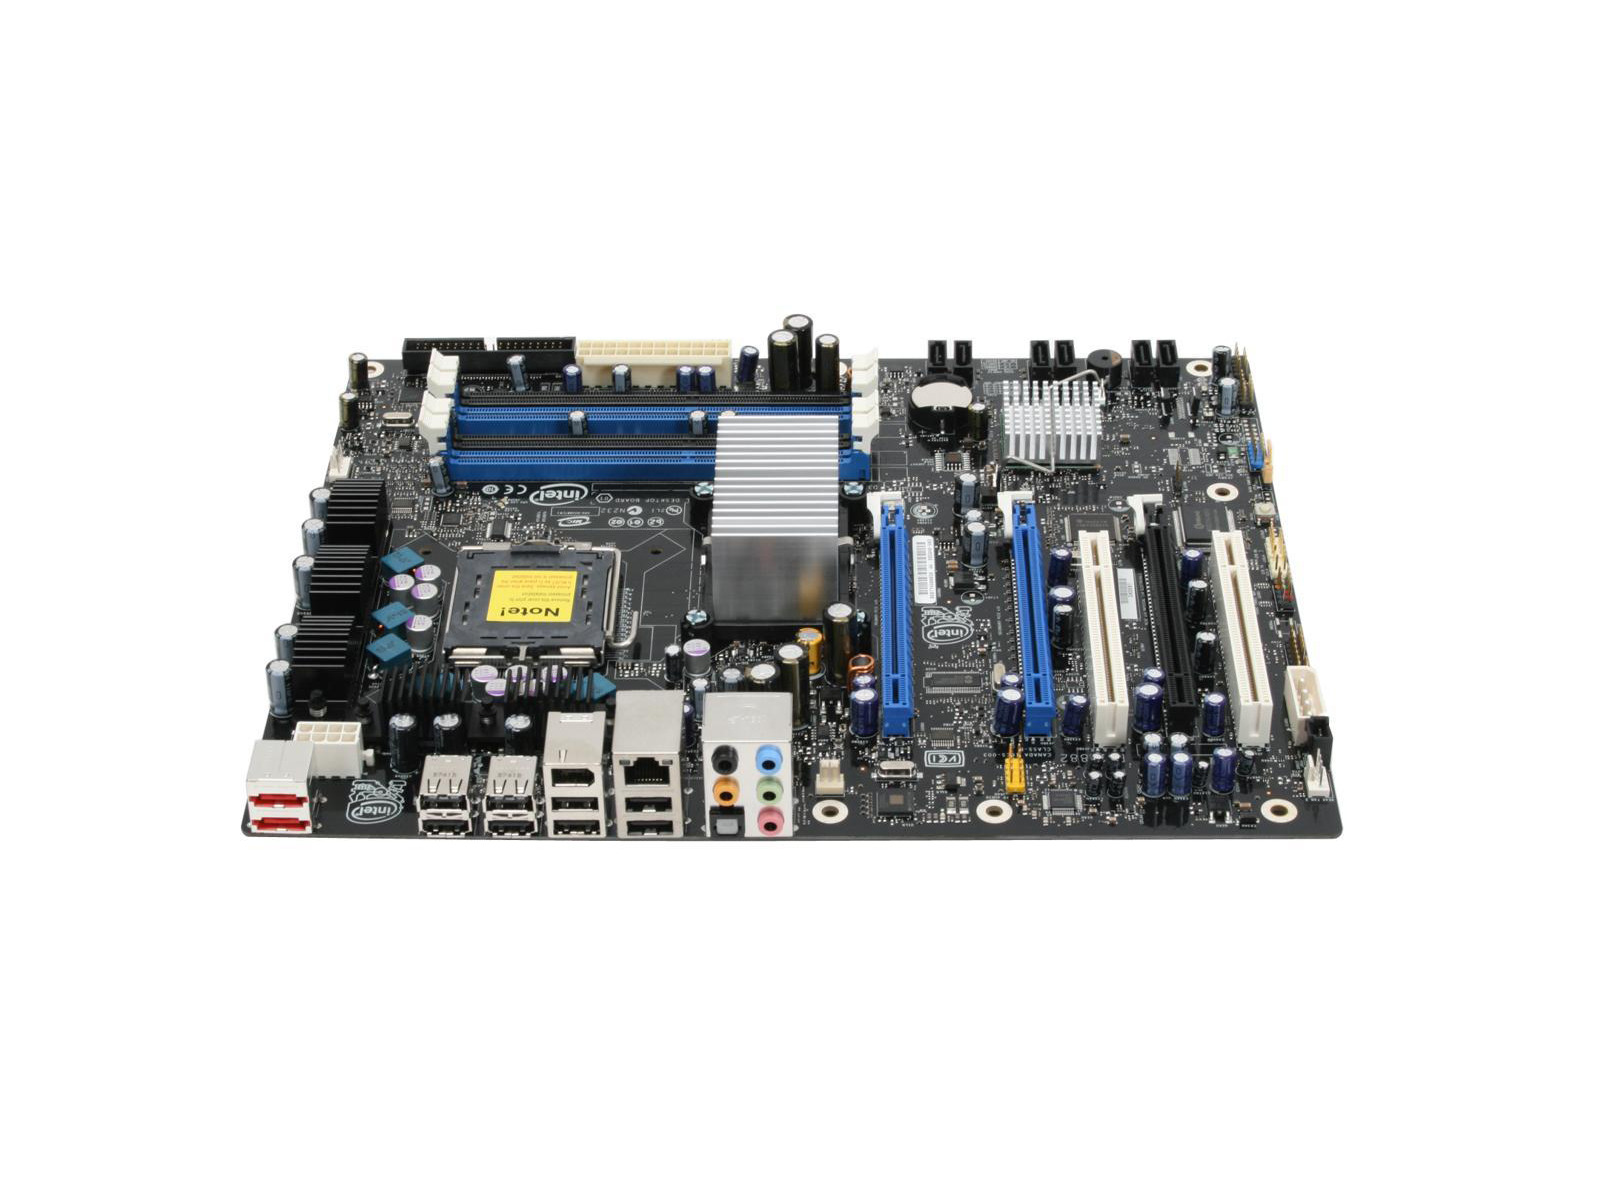 Intel DX38BT 82X38 LGA 775 (Socket T) DDR3 ATX PC Computer Desktop Motherboard